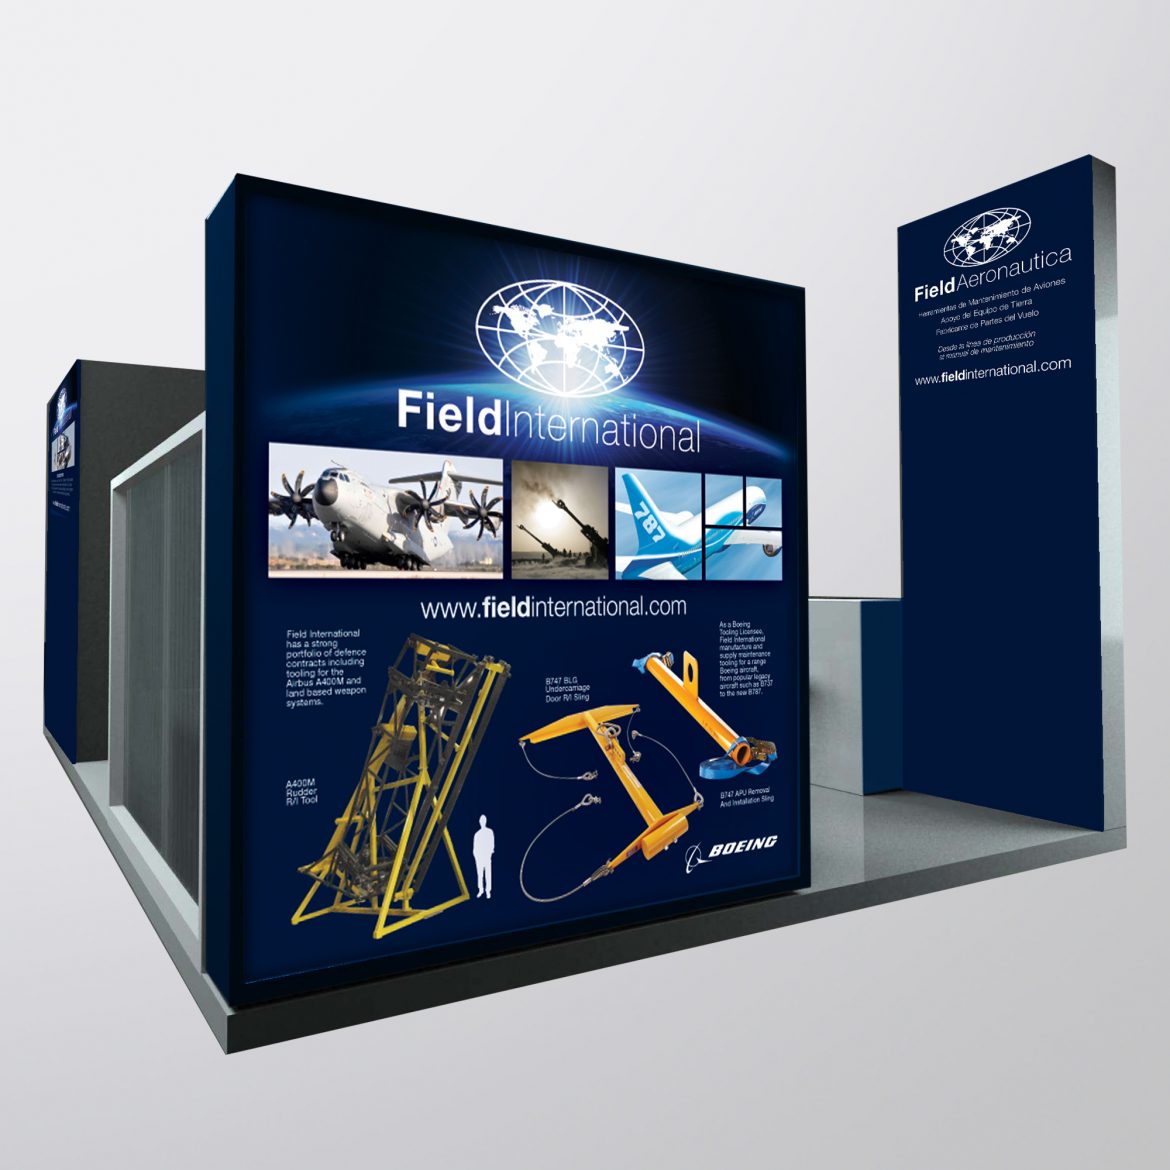 Field International Exhibition Stand Design